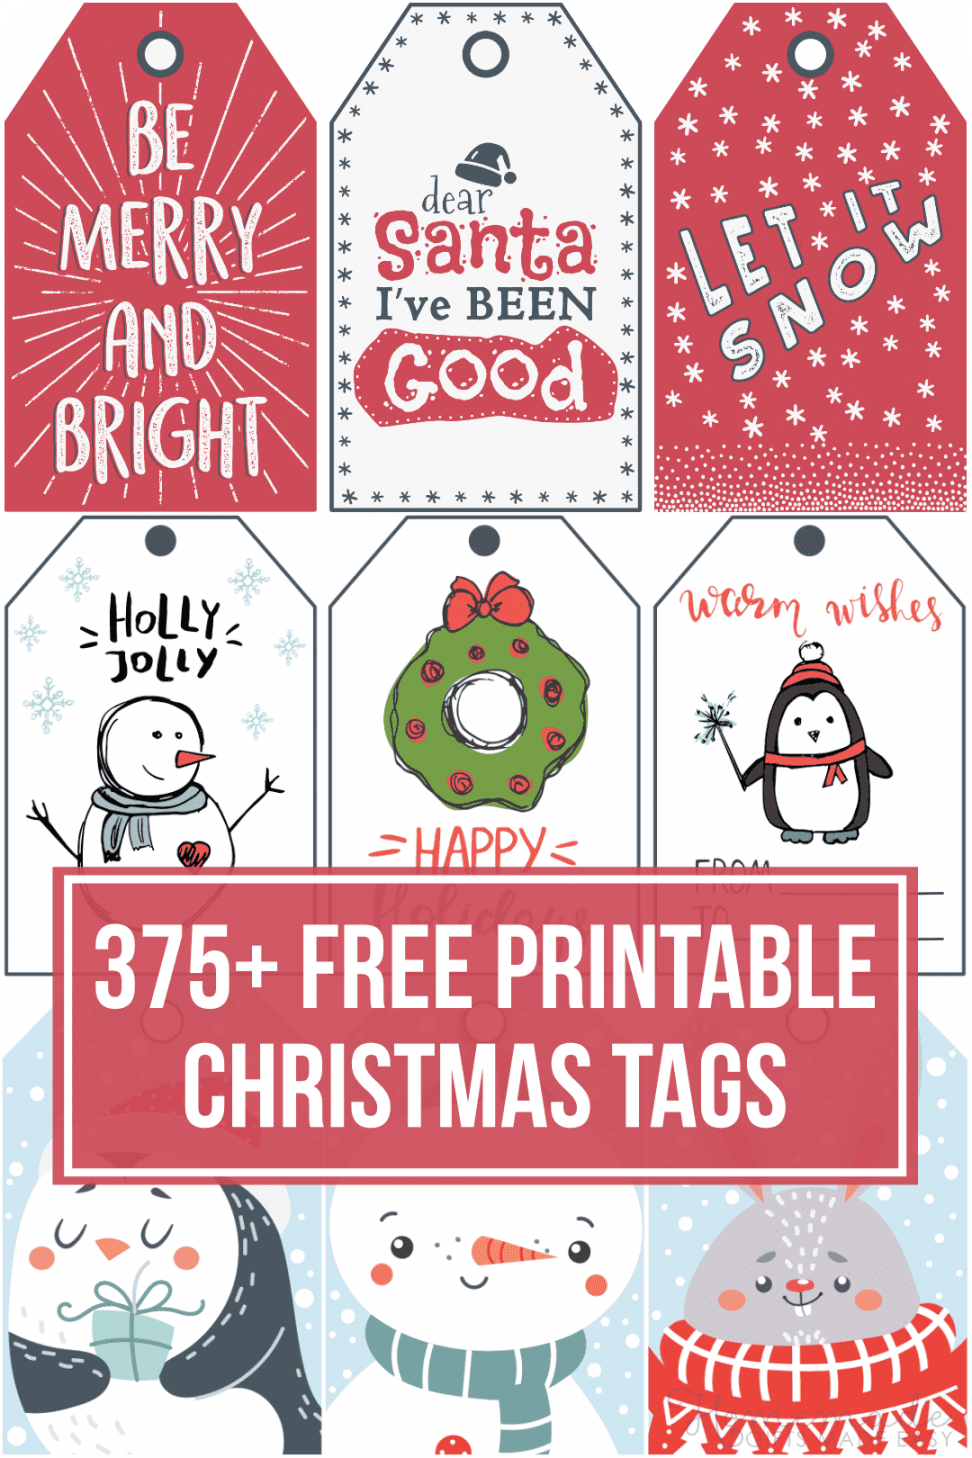 + Free Printable Christmas Tags for your Holiday Gifts - FREE Printables - Free Printable Christmas Tags